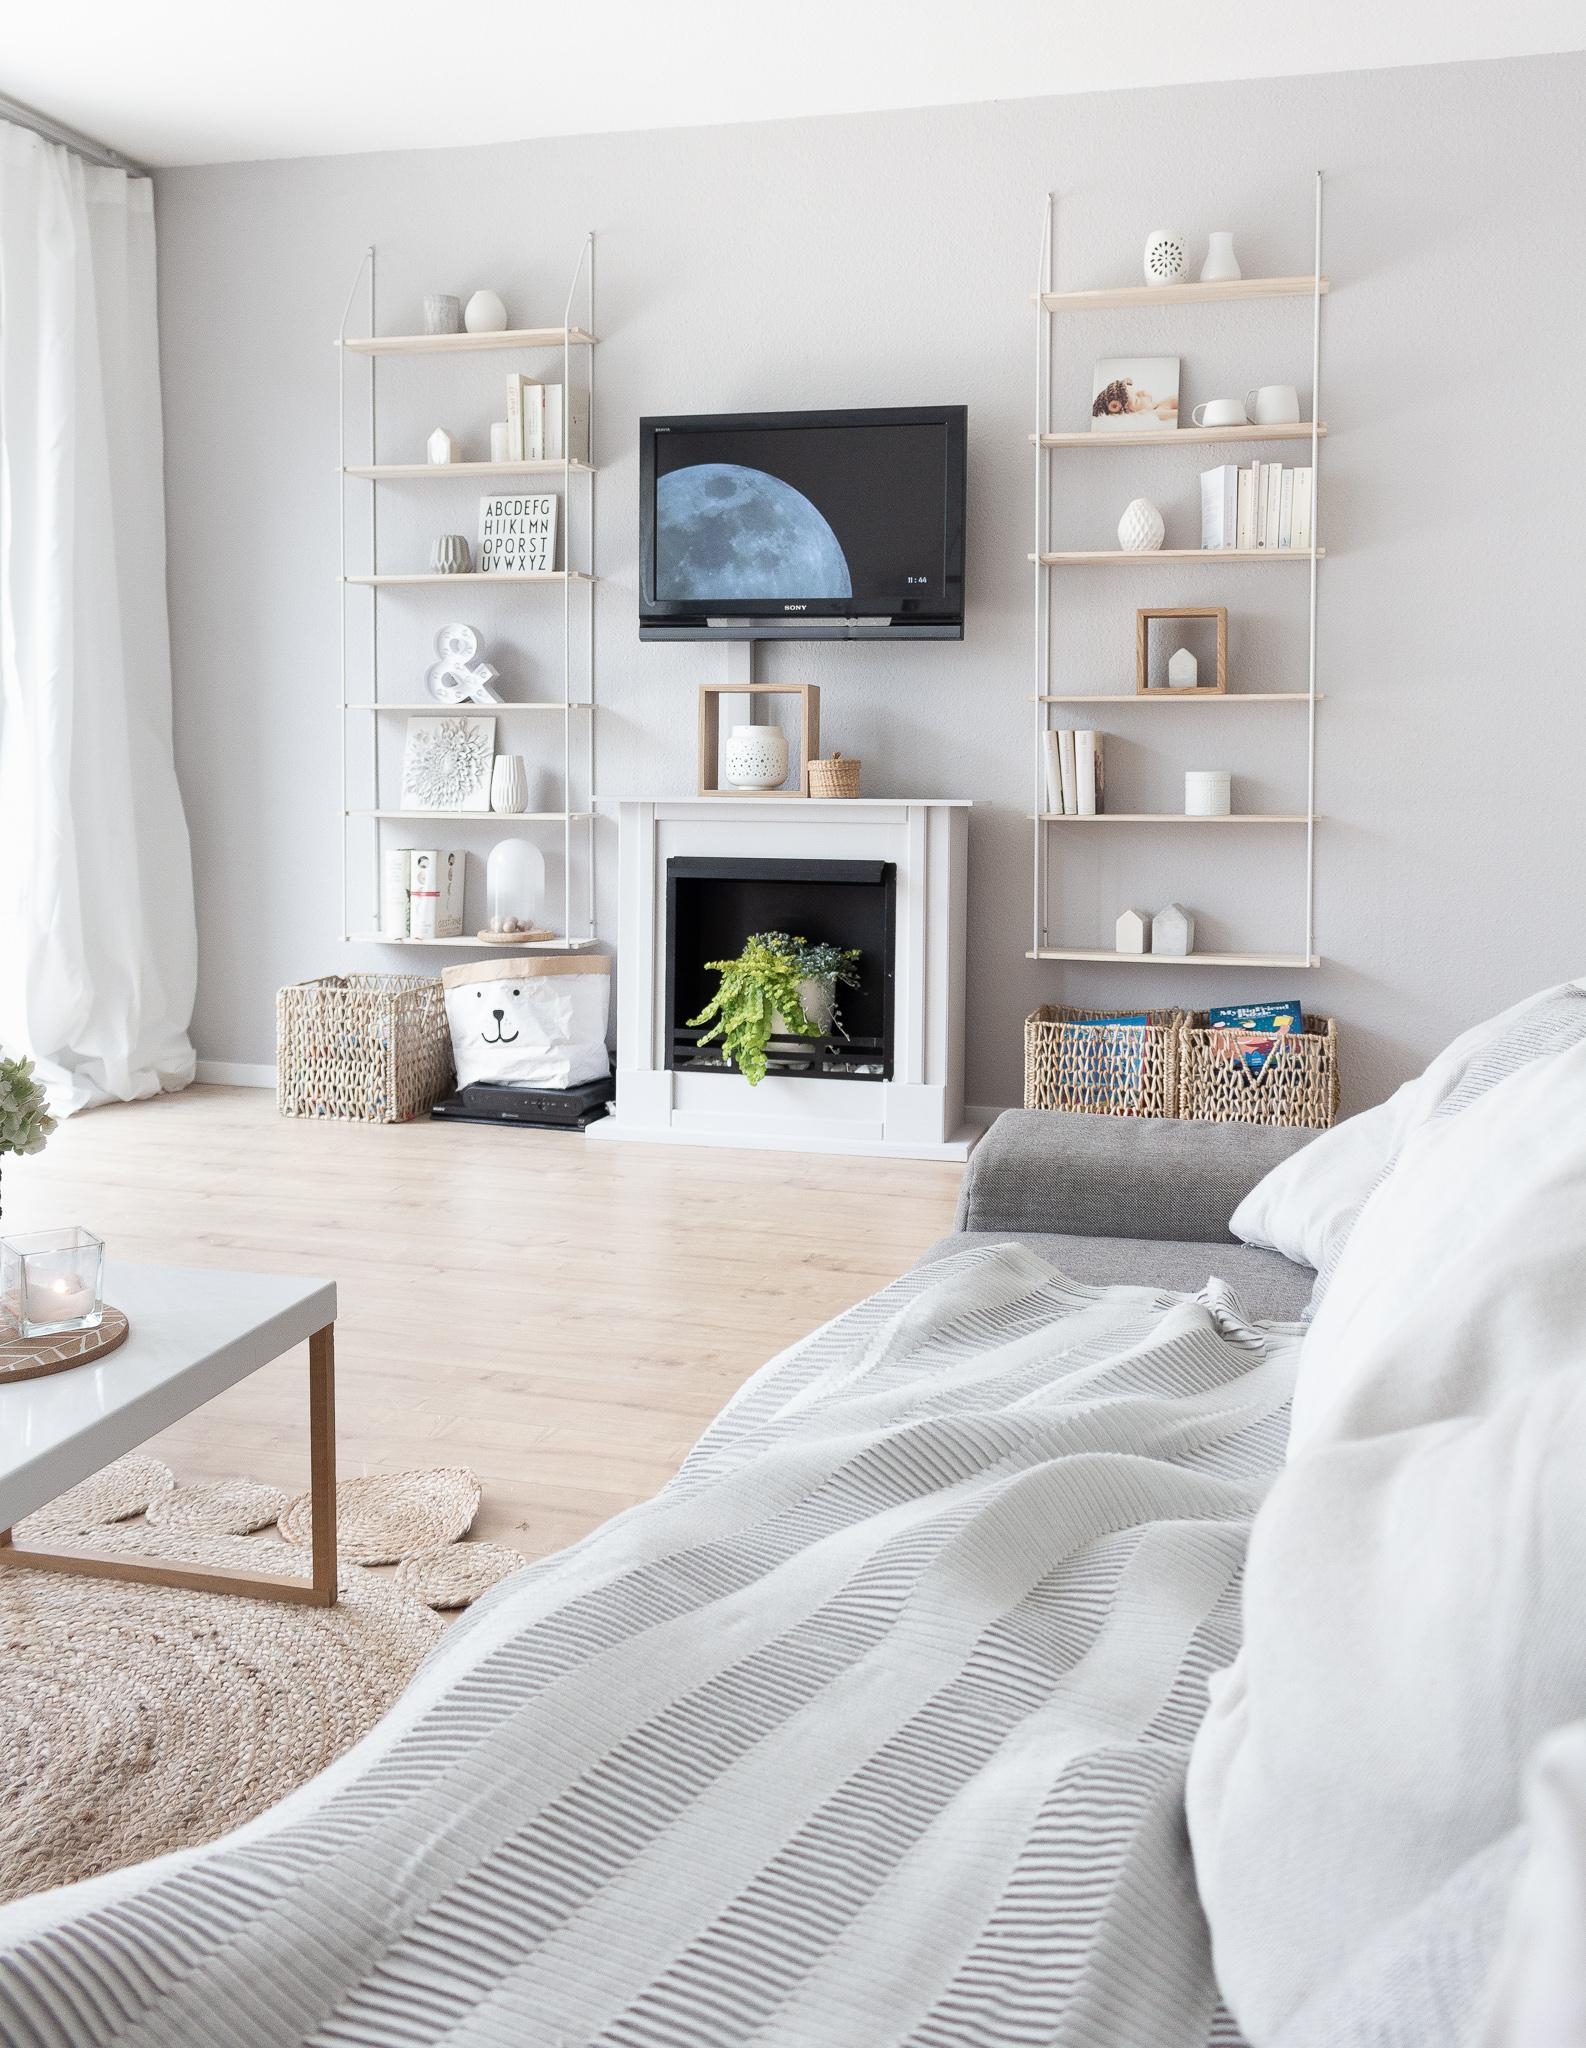 Wohnzimmer - zurückhaltend und gemütlich

#skandinavischwohnen #wohnzimmer